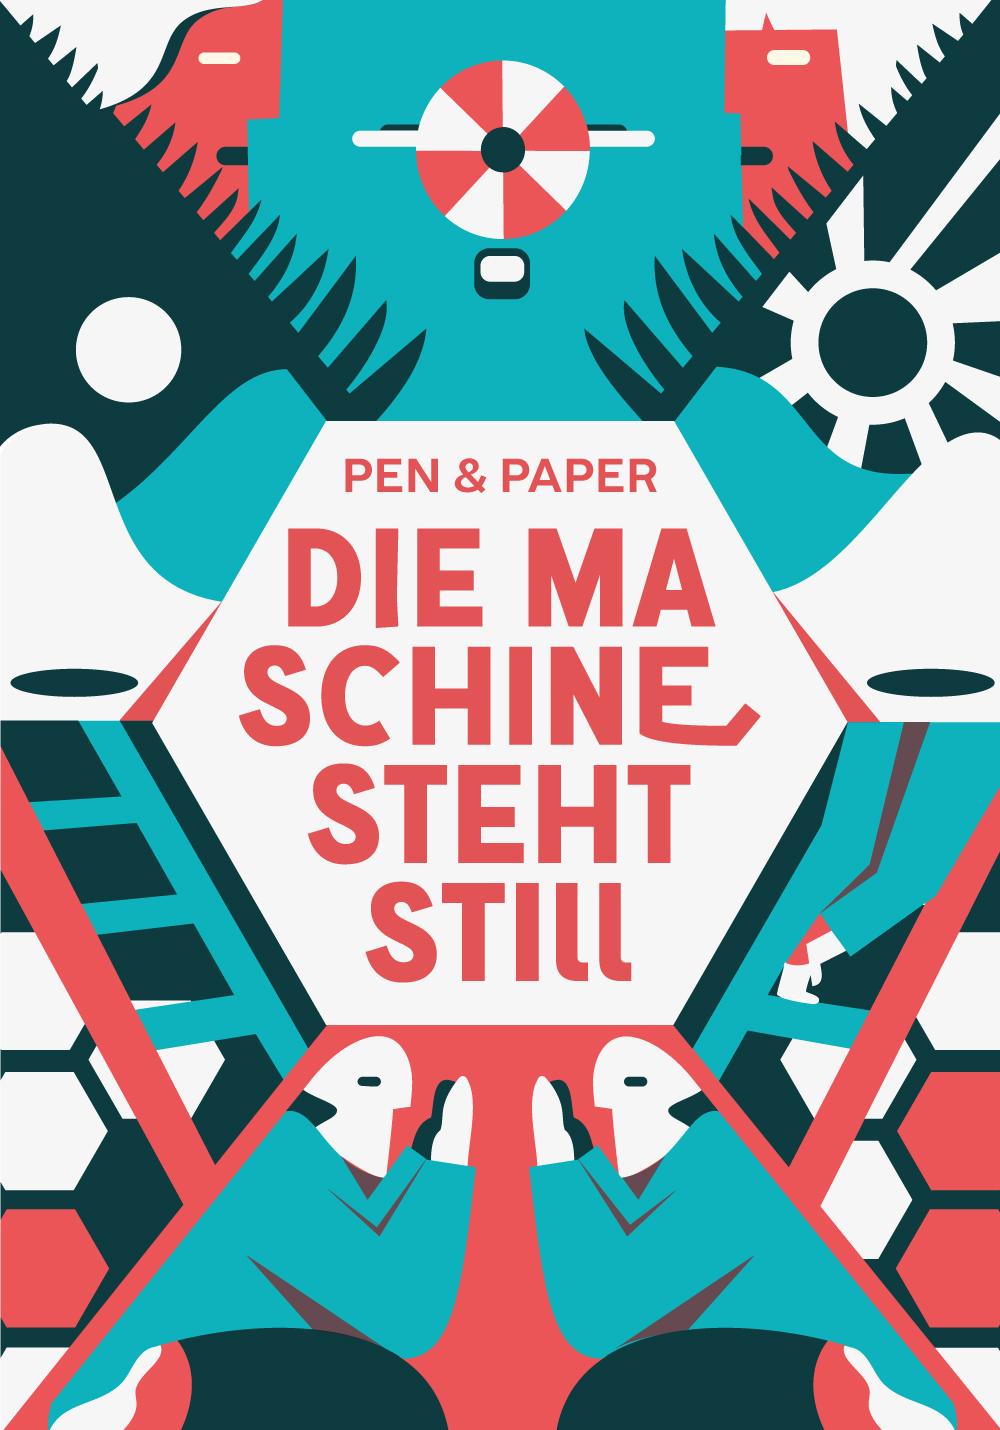 Cover des Pen and Papers Maschine steht still von Luisa Bebenroth